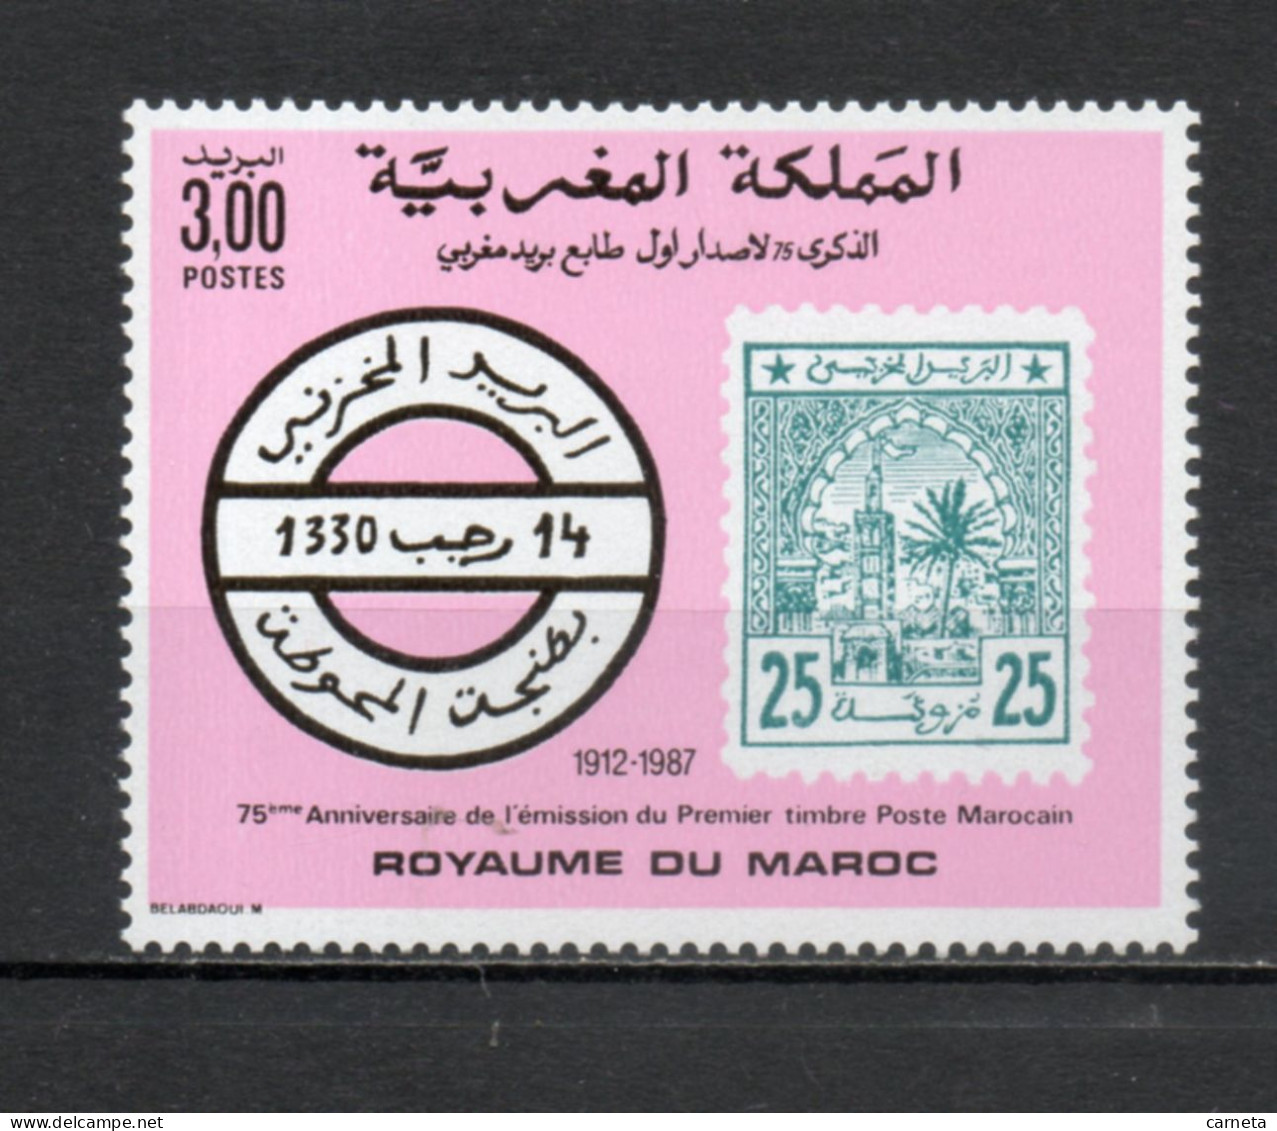 MAROC N°  1045   NEUF SANS CHARNIERE  COTE 1.50€    TIMBRE SUR TIMBRE - Marocco (1956-...)